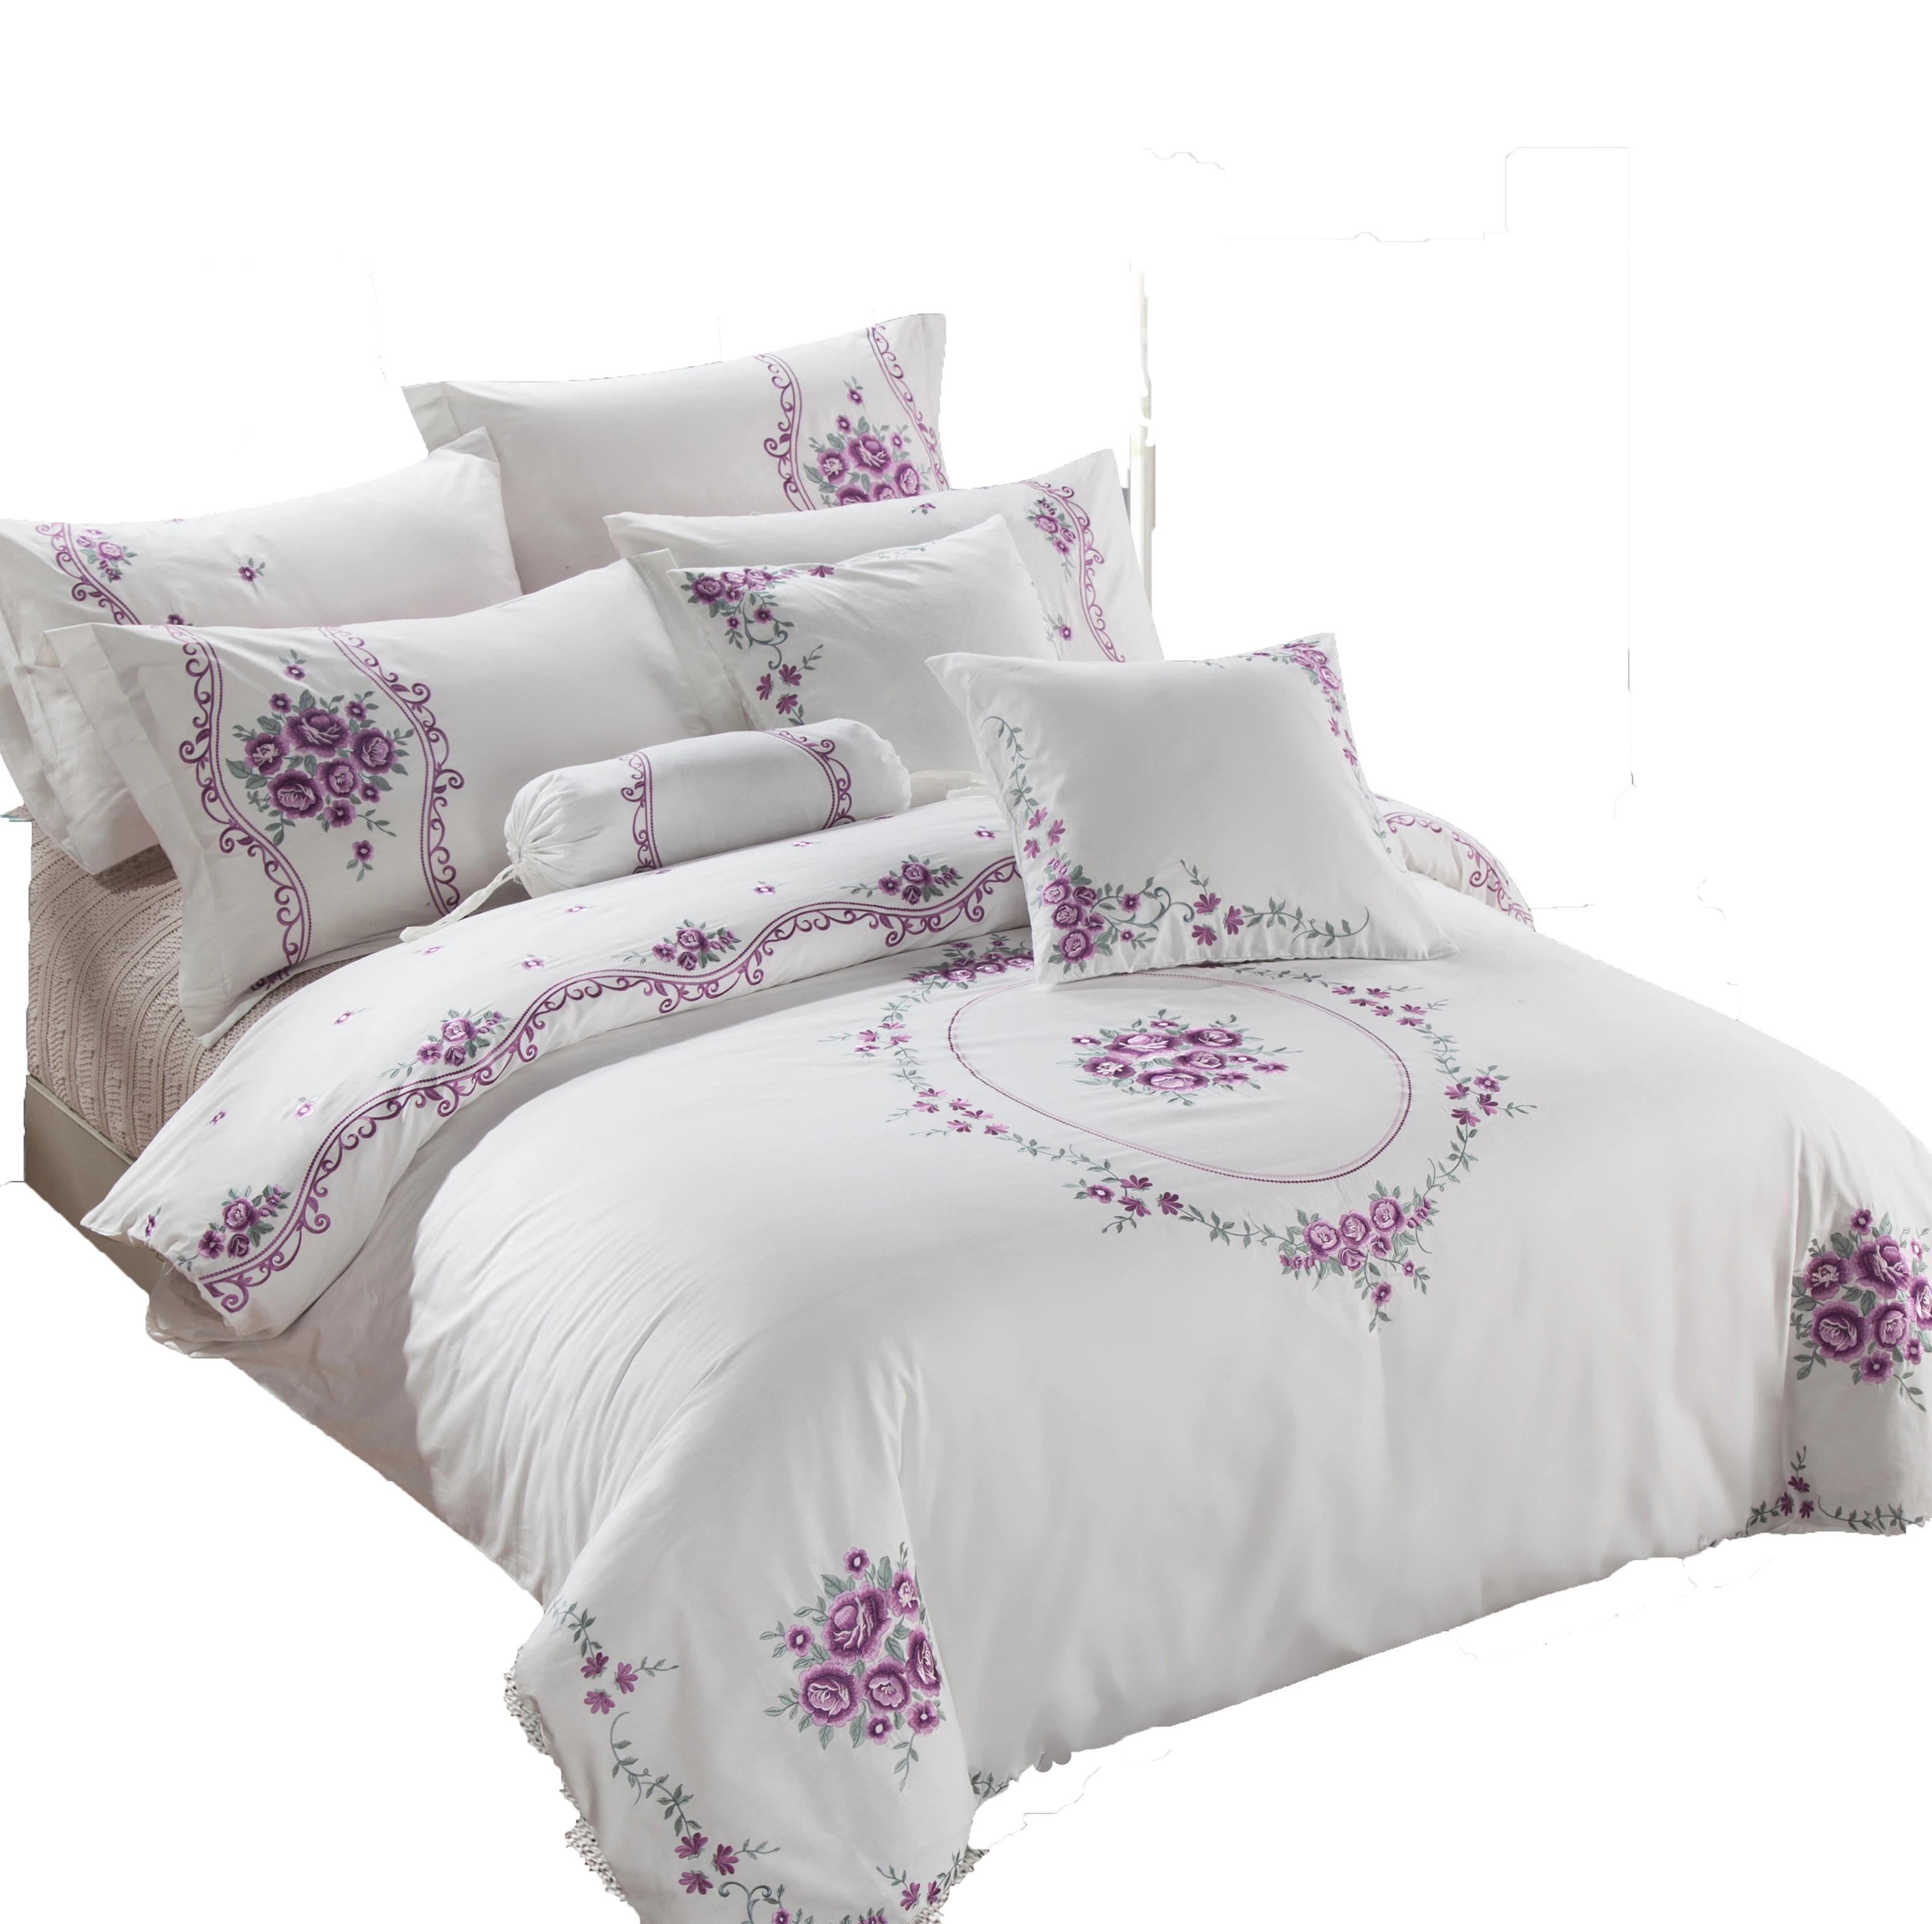 Kosmos home textile 100% cotton 4pcs bed duvet set cotton duvet cover